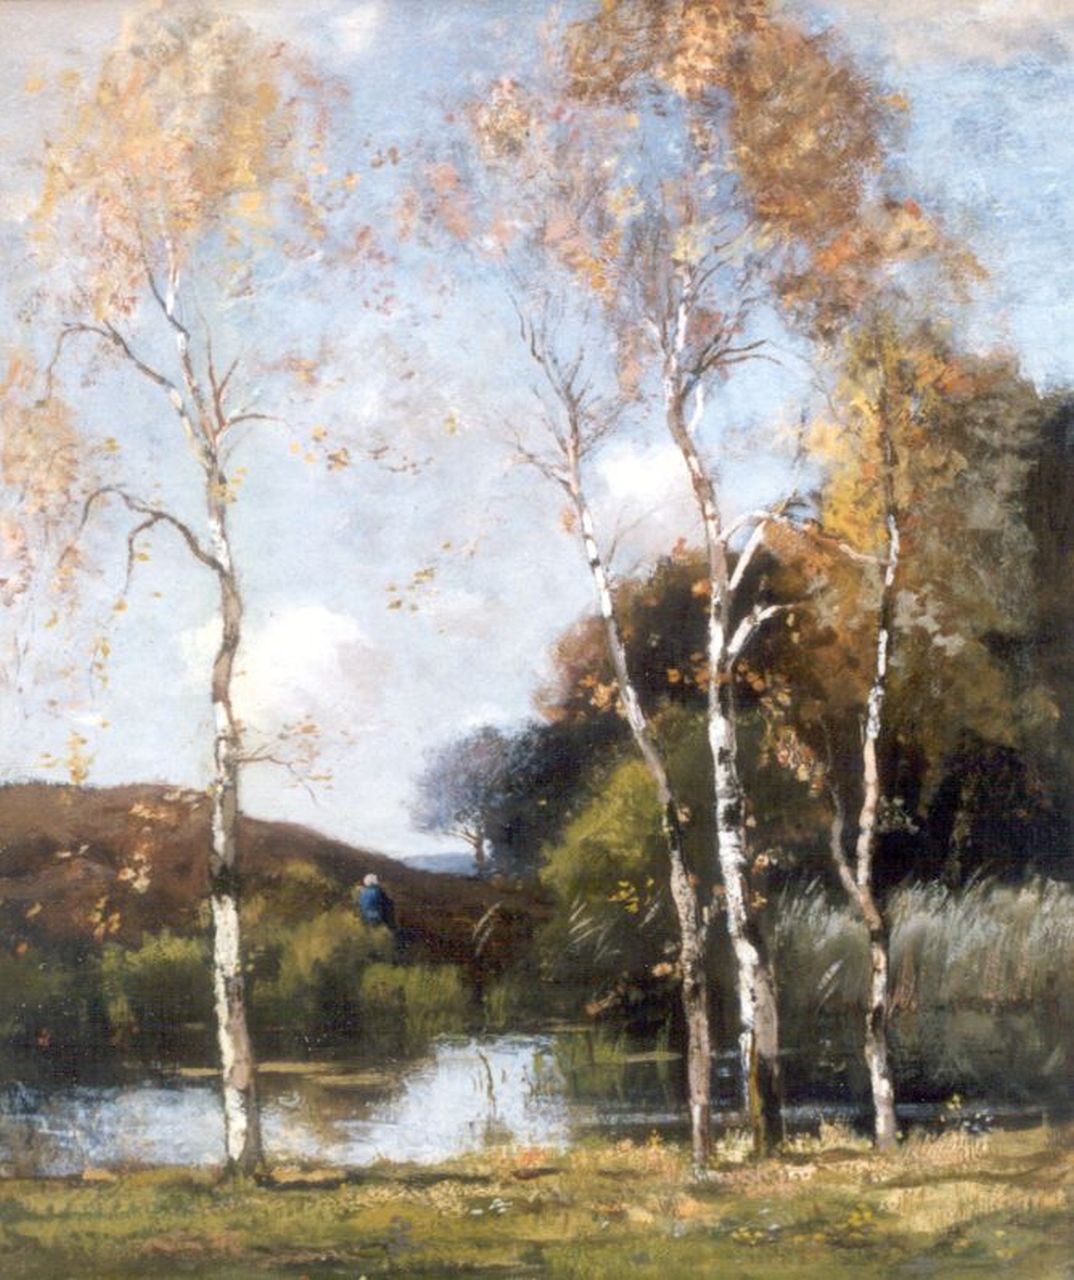 Bock T.E.A. de | Théophile Emile Achille de Bock, A forest pond, oil on canvas 81.5 x 61.0 cm, signed l.r.